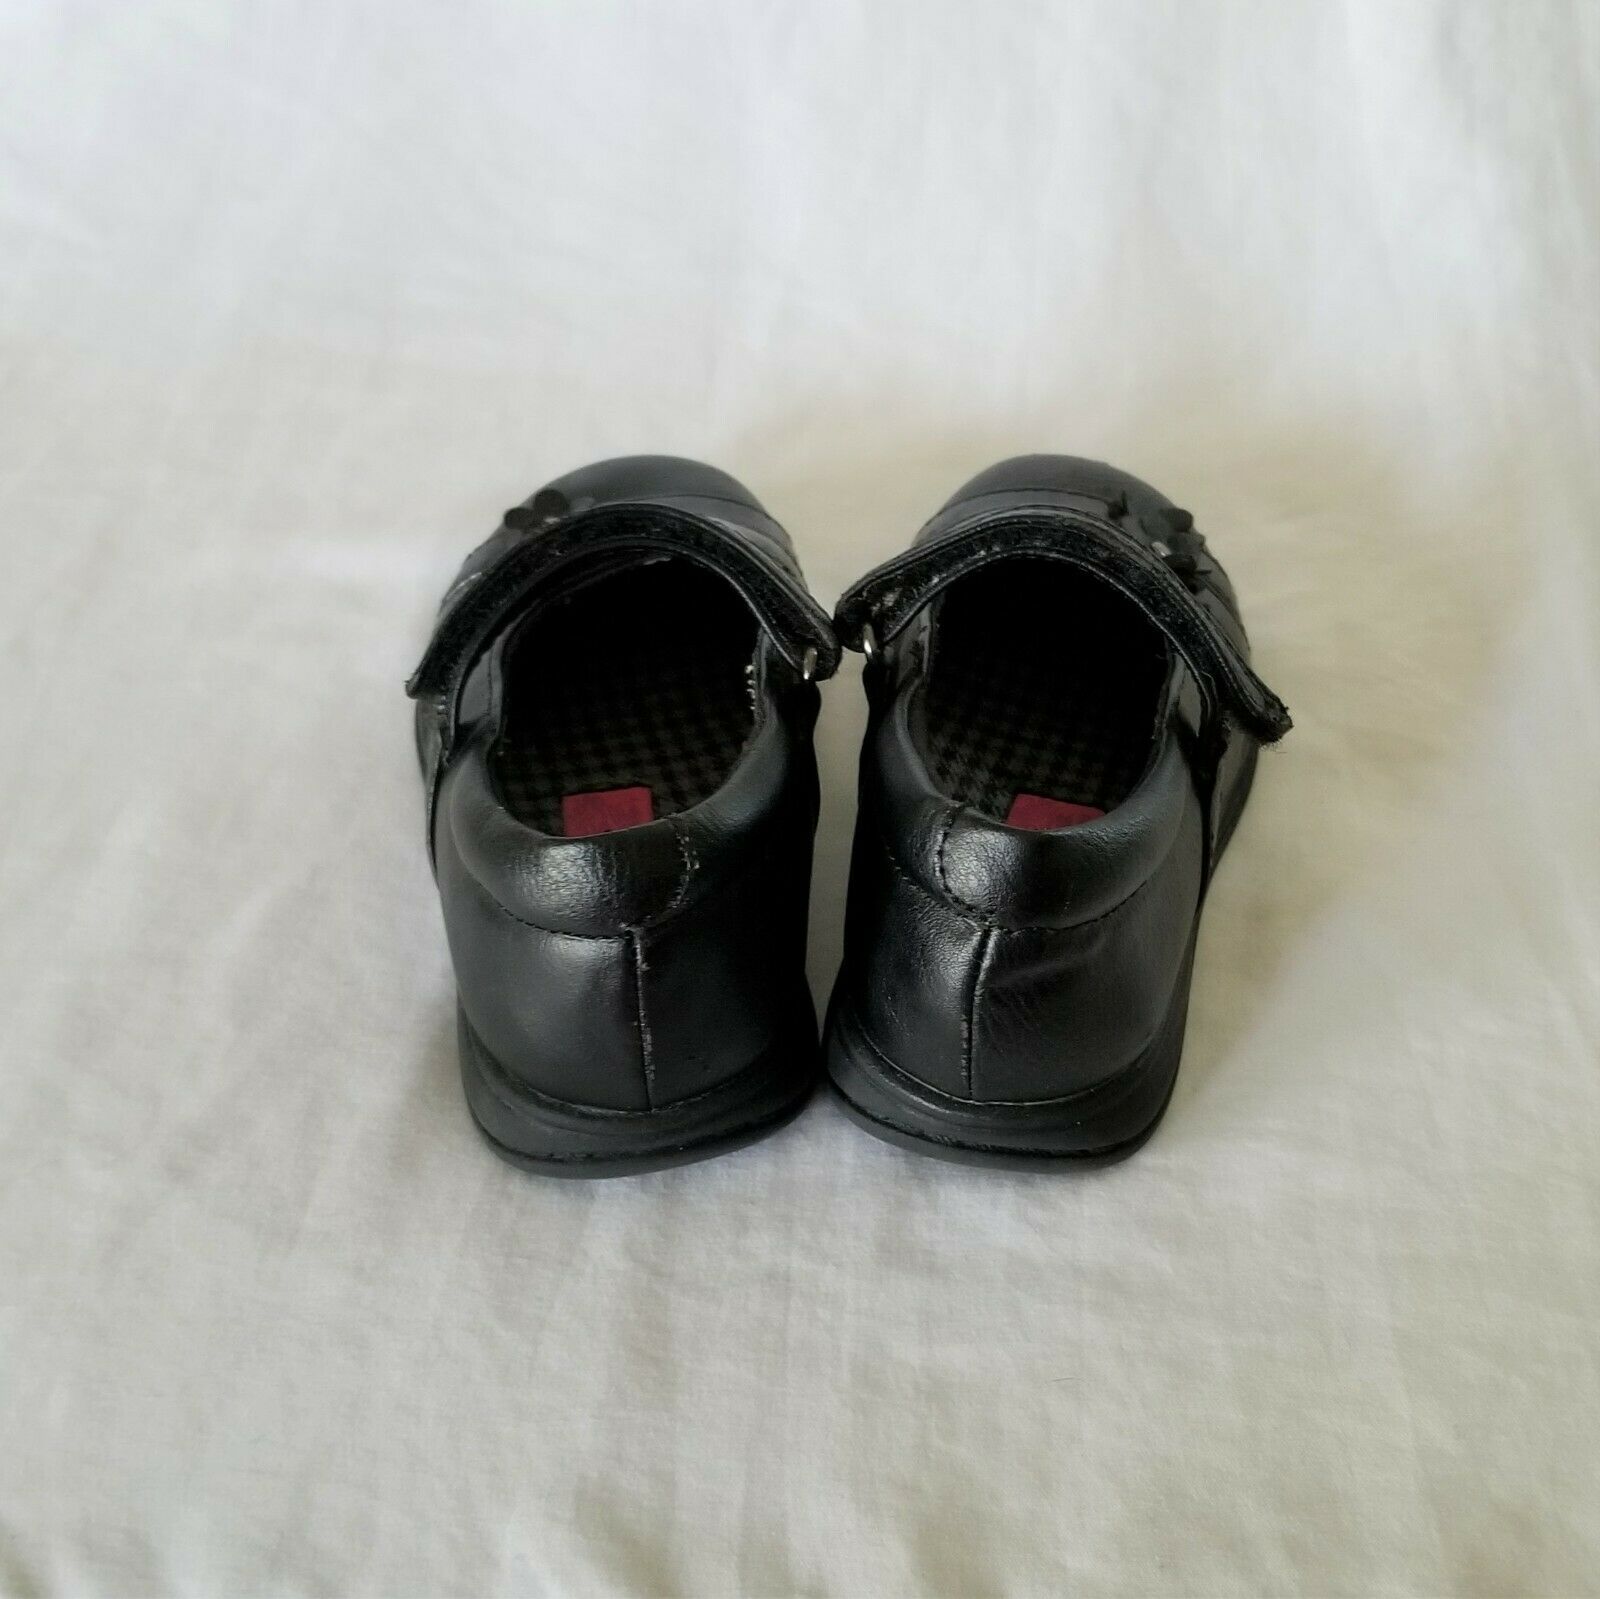 Baby Girl Toddler Rachel Shoes Black Uniform Dress Shoes Size 6 M